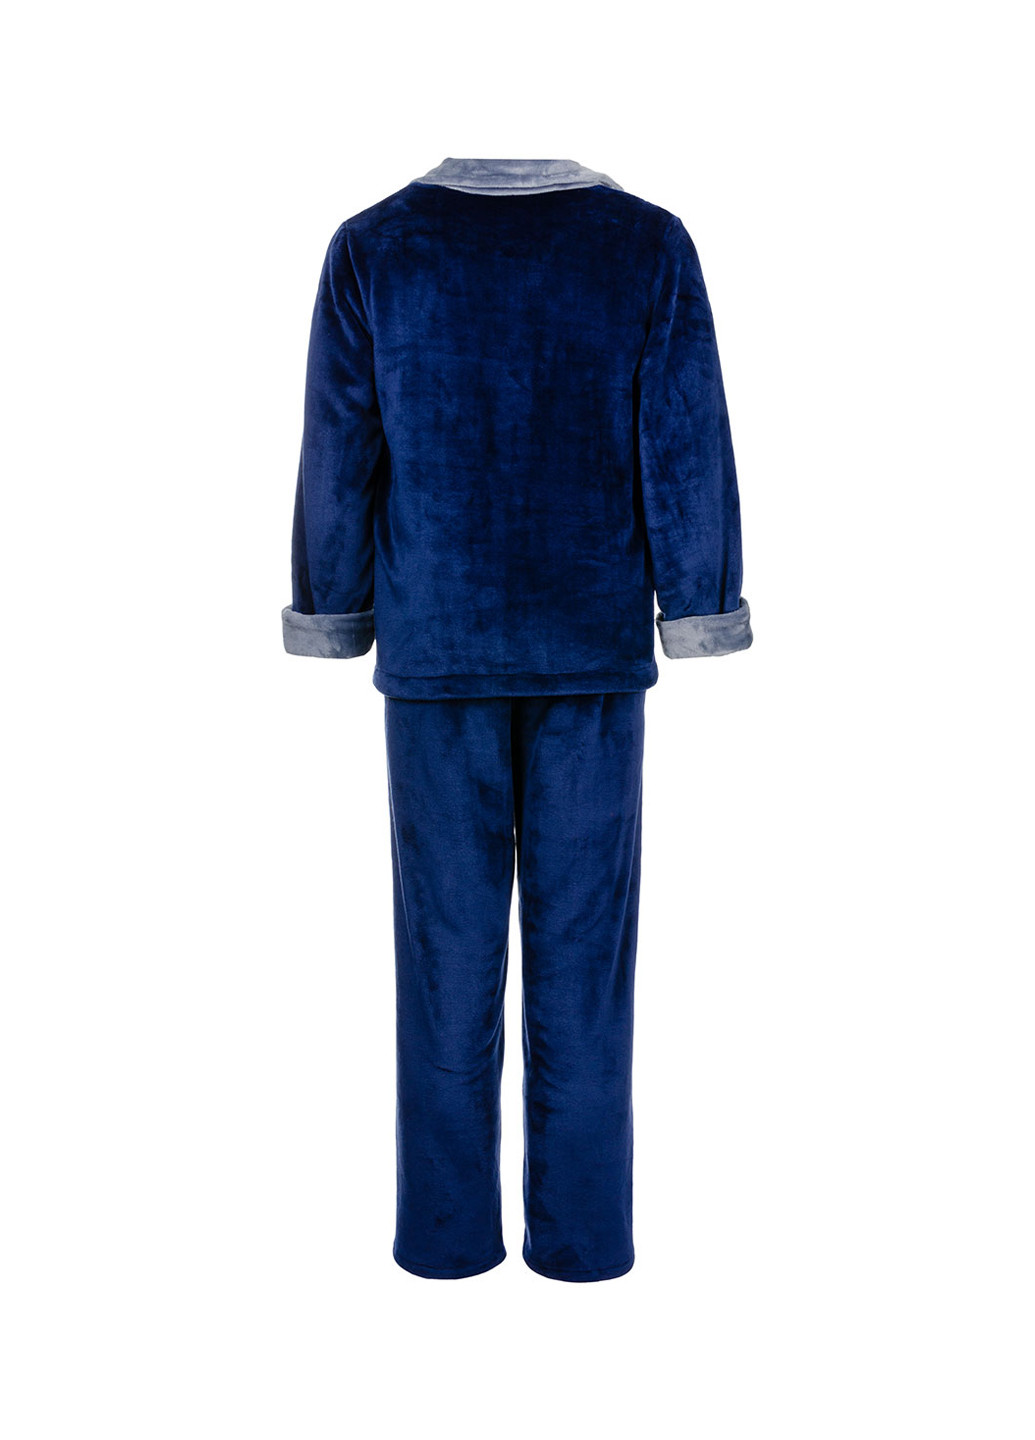 Пижама (толстовка, брюки) Elegans однотонная тёмно-синяя домашняя хлопок, полиэстер